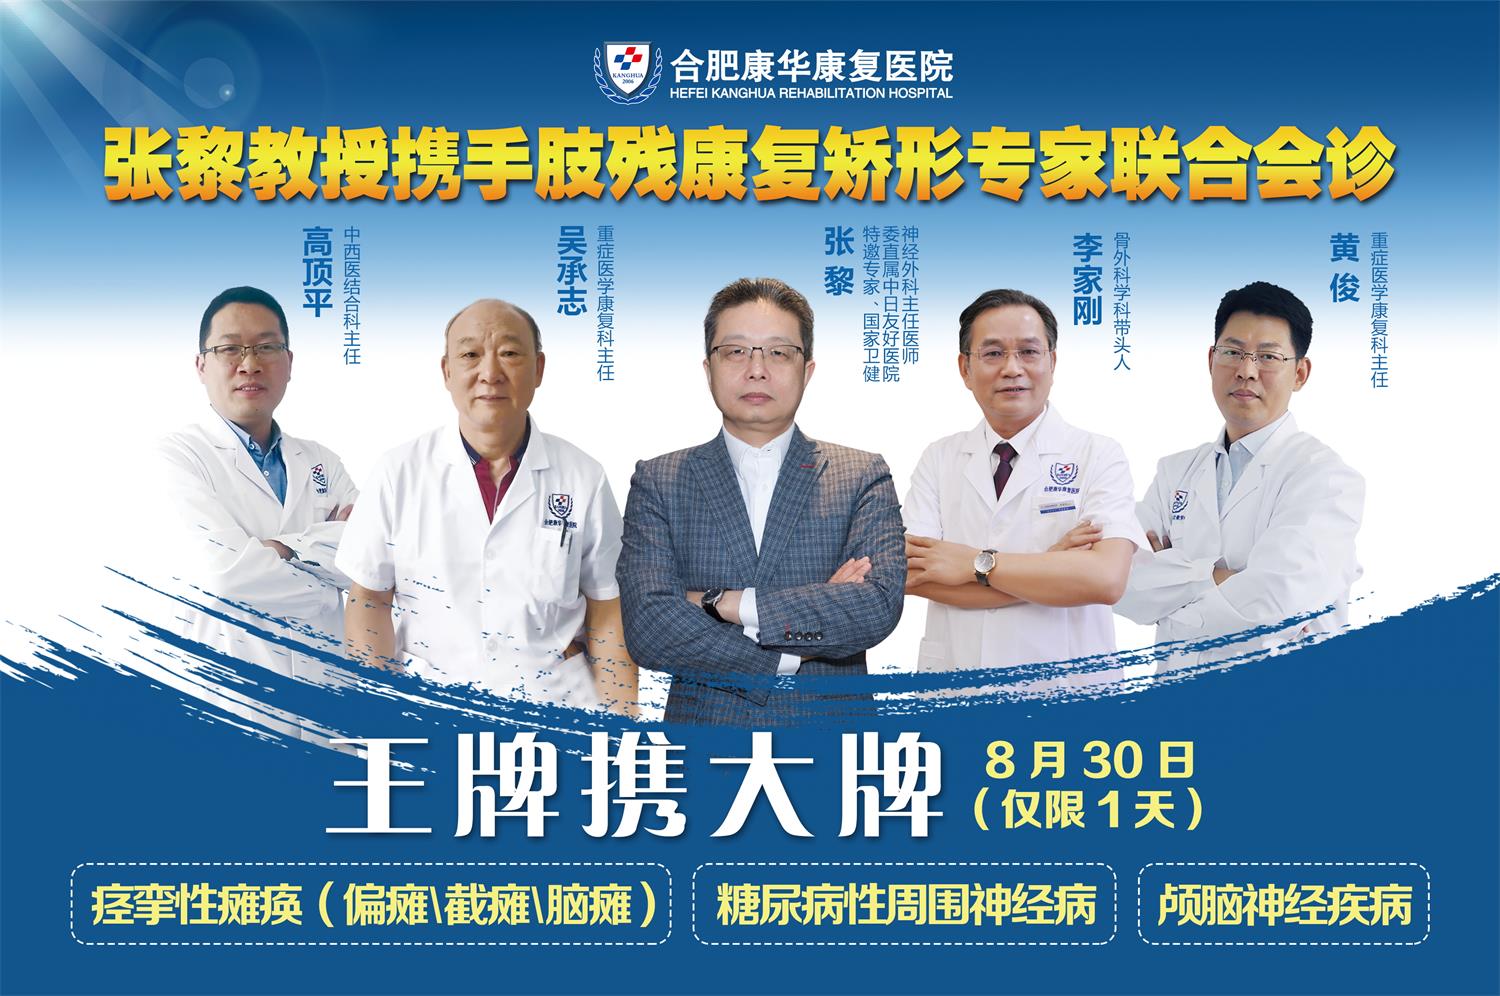 8月30日，博士生导师张黎教授坐诊康华，速度预约